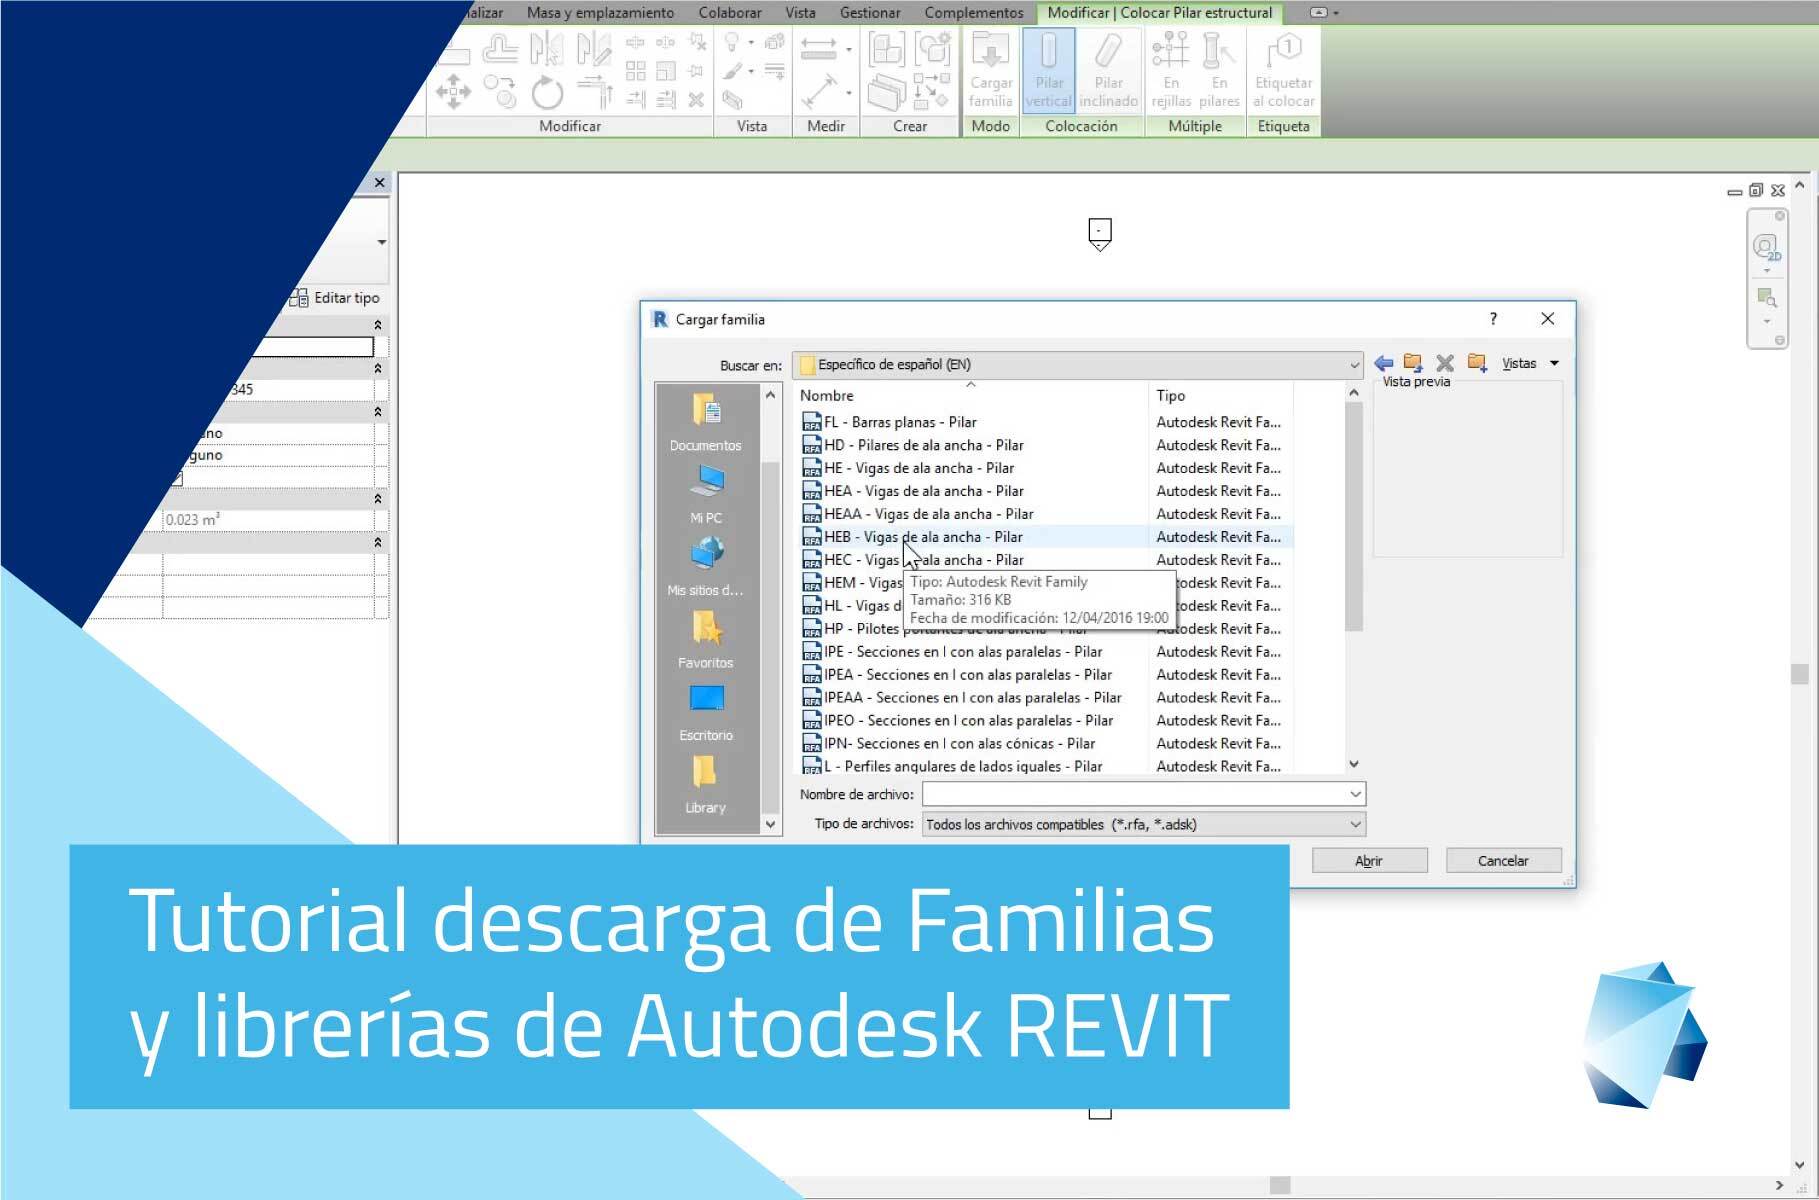 Tutorial descarga familias y librerías de Autodesk REVIT